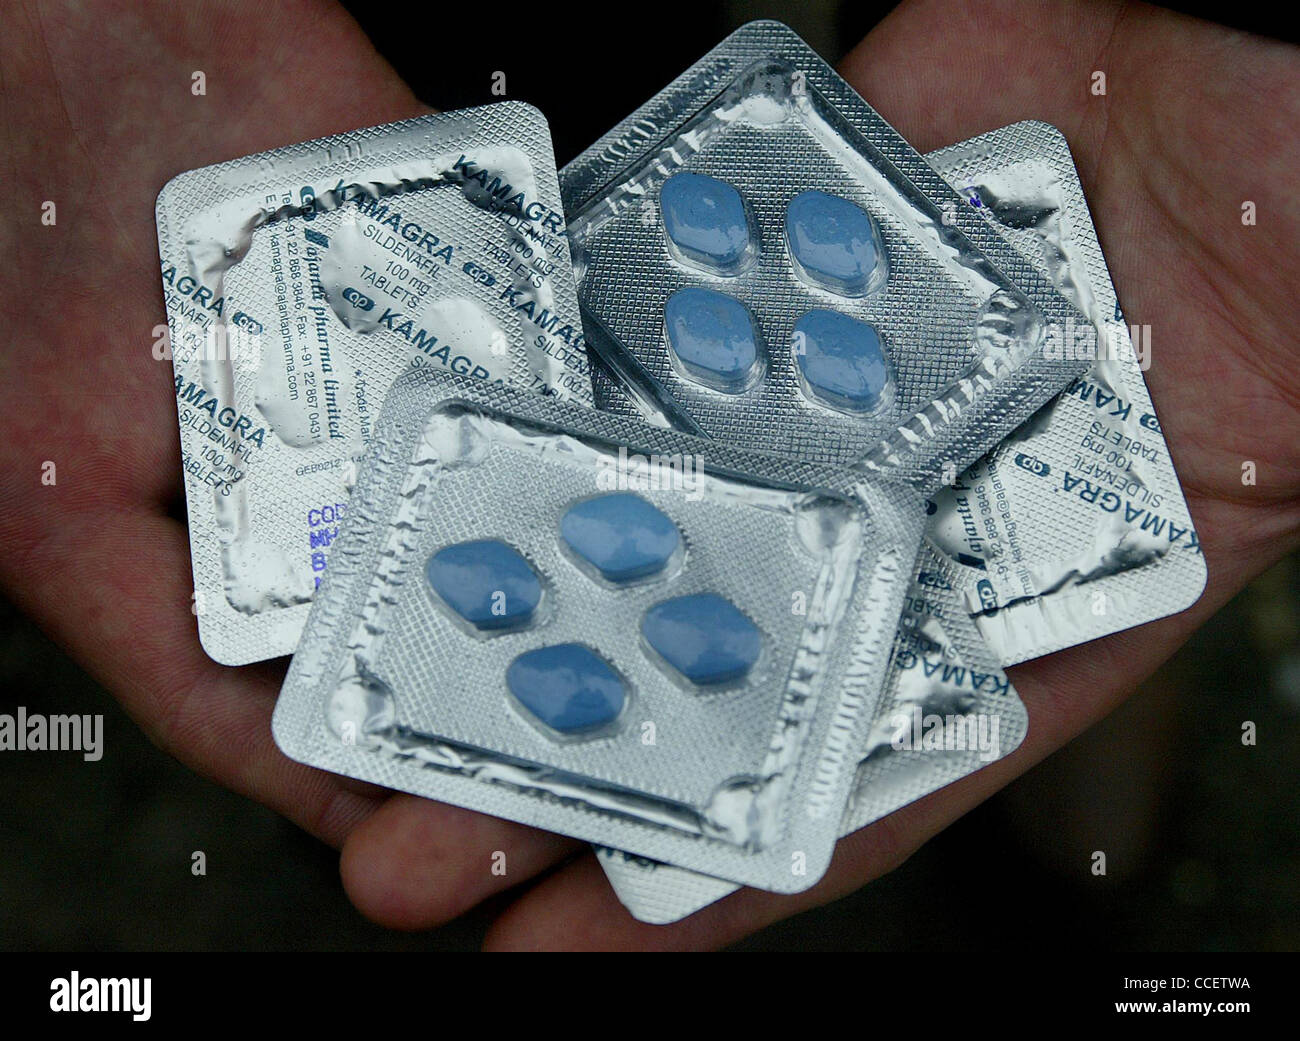 Ein Reporter halten [gefälschte Viagra] Kamagra Tabletten über das Internet  gekauft. Bild von James Boardman Stockfotografie - Alamy